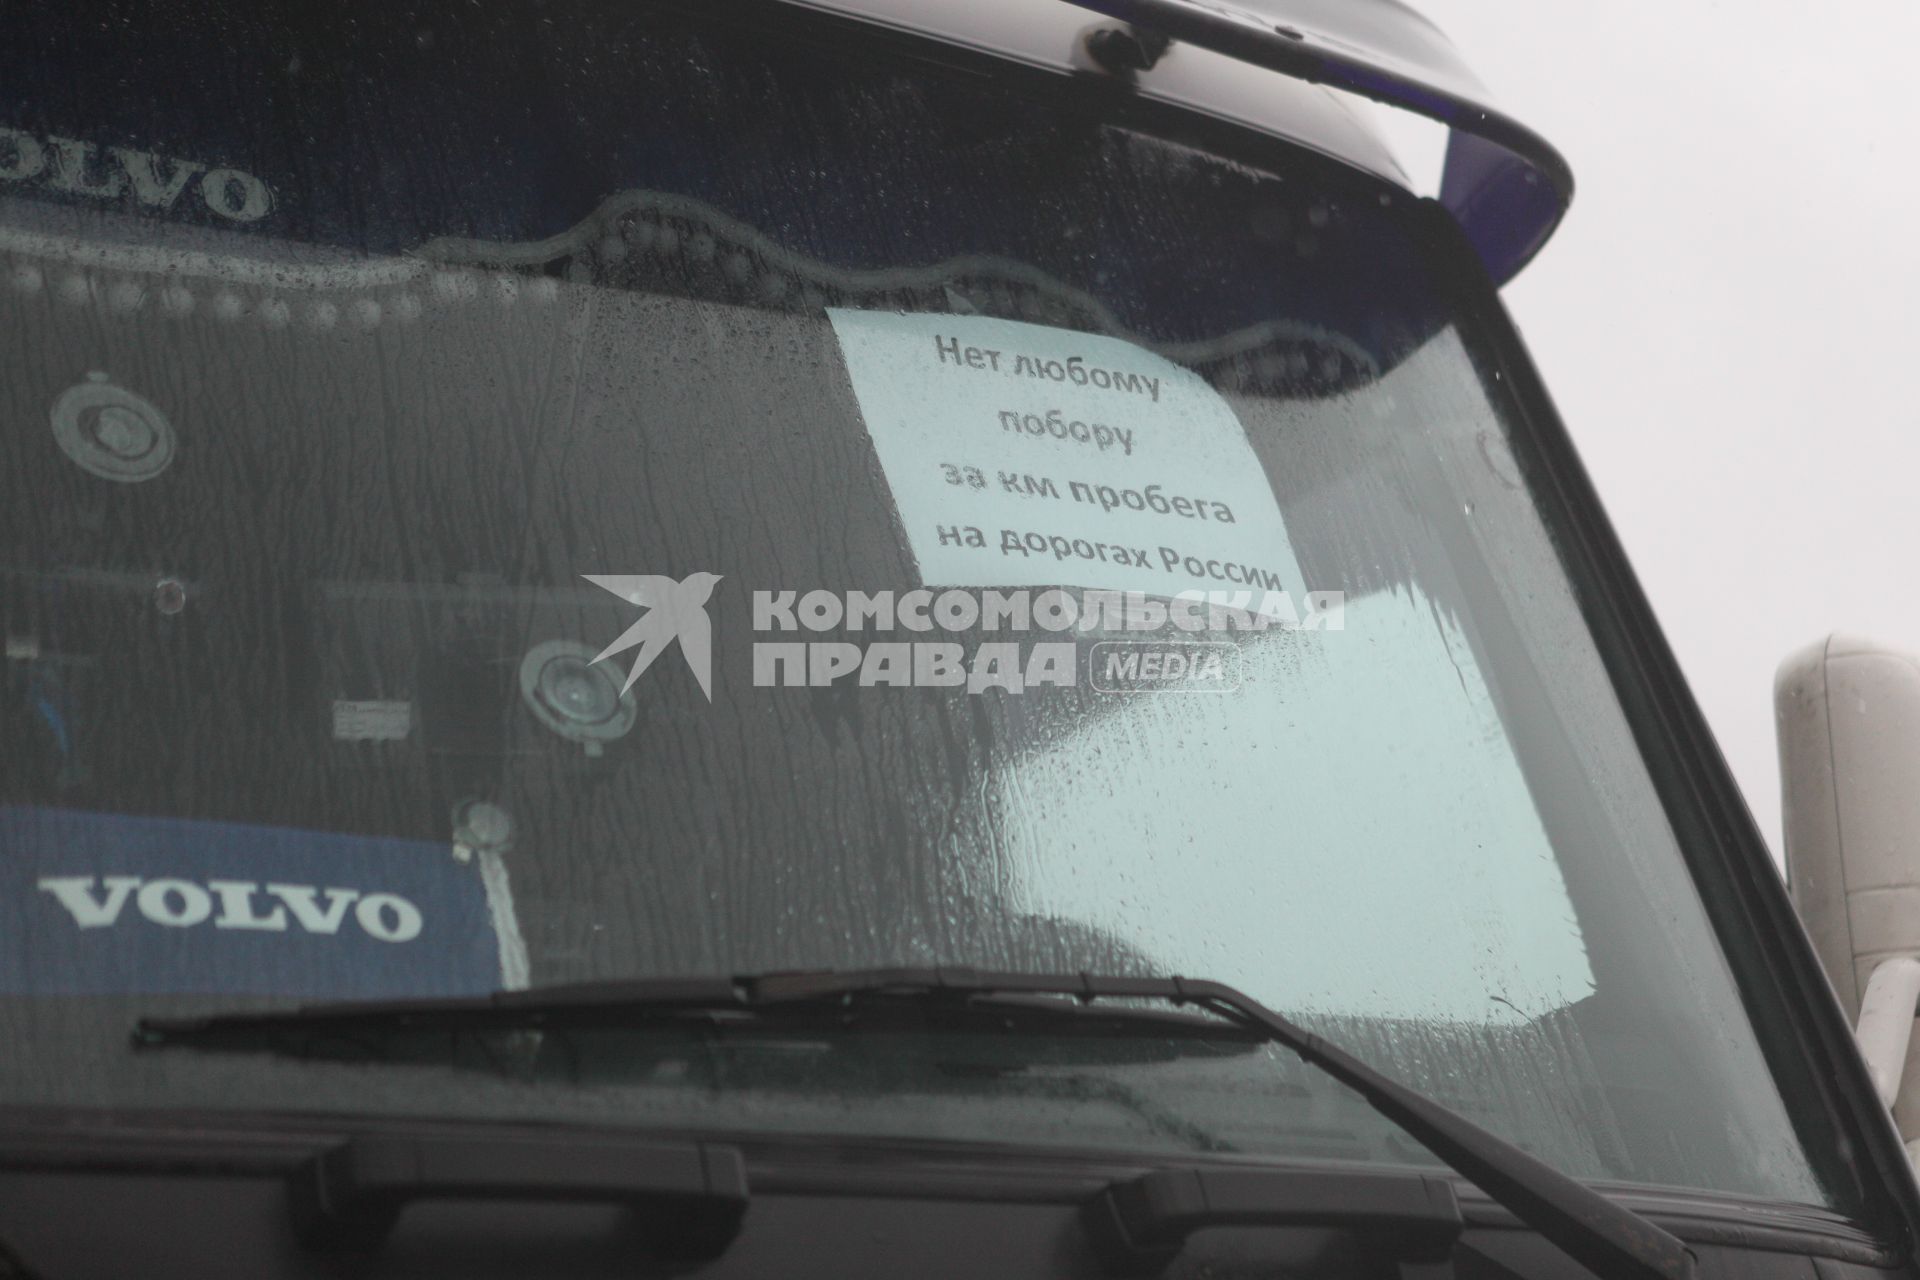 Ставрополь. Протест дальнобойщиков против введения платы за проезд по федеральным дорогам.